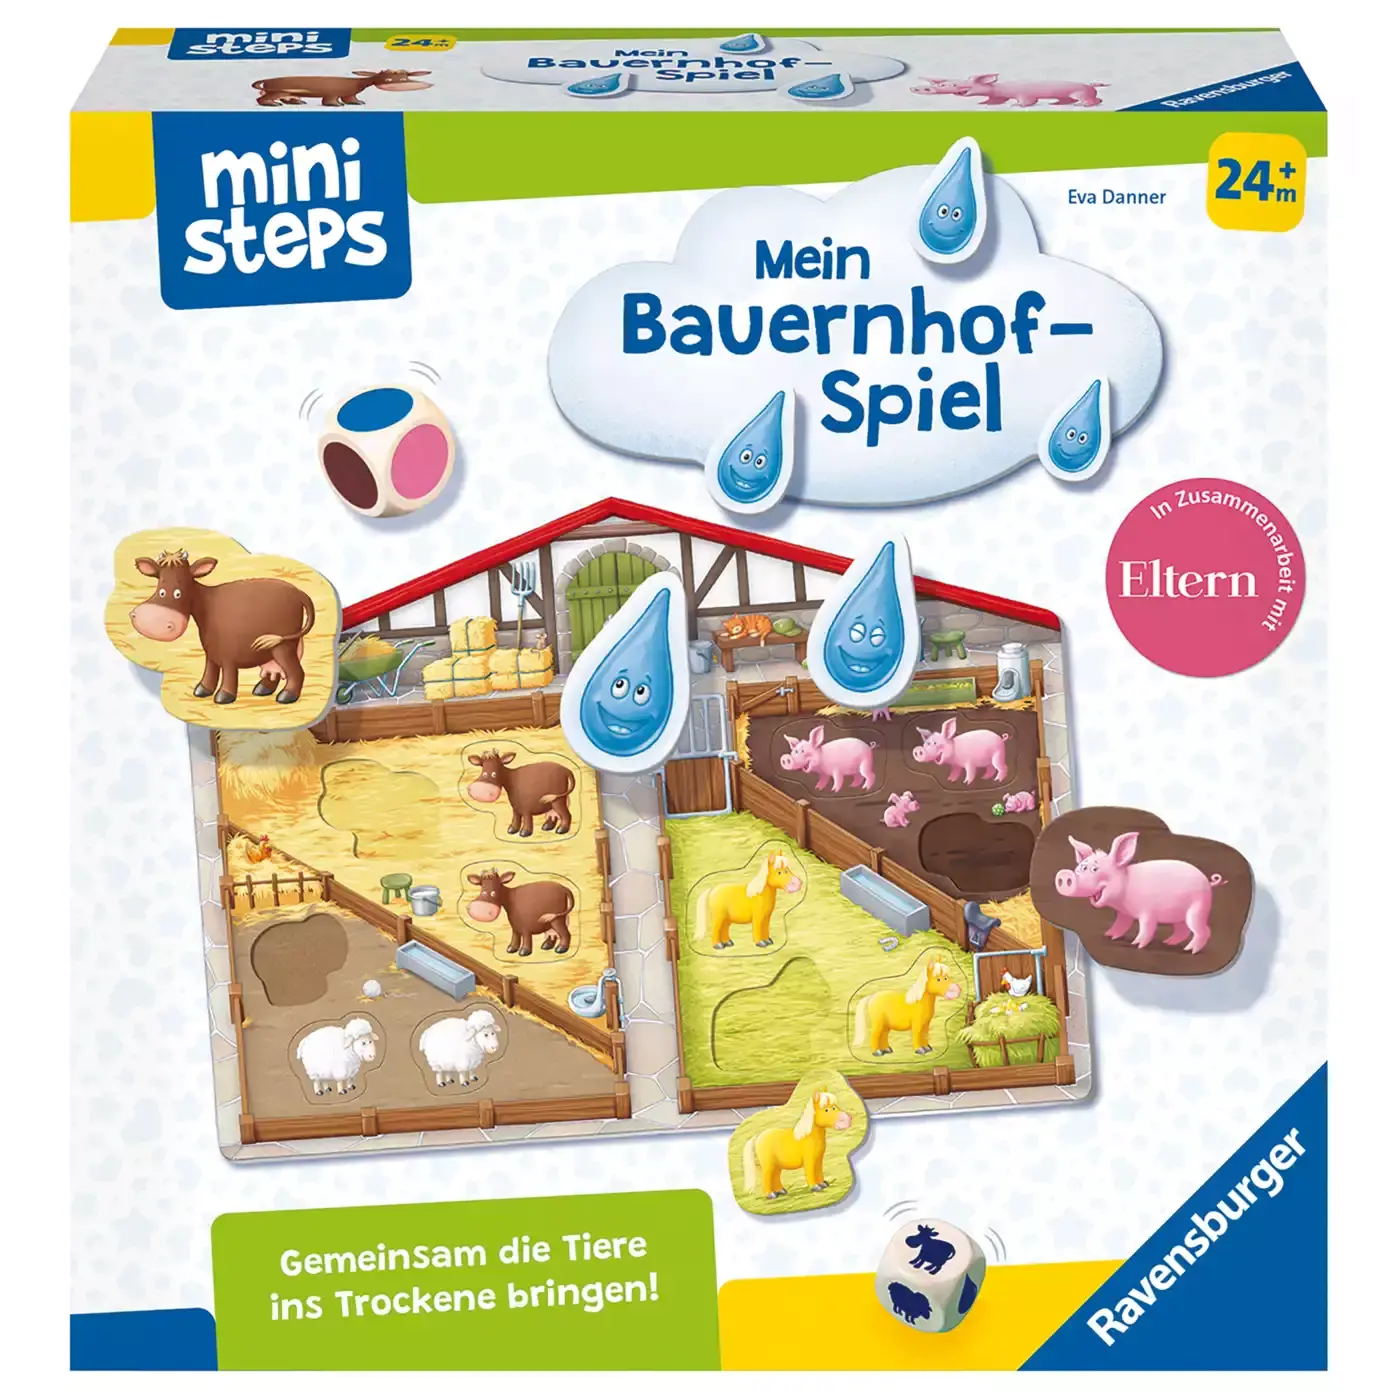 Mini Steps Mein Bauernhof-Spiel Ravensburger 2000579698309 1